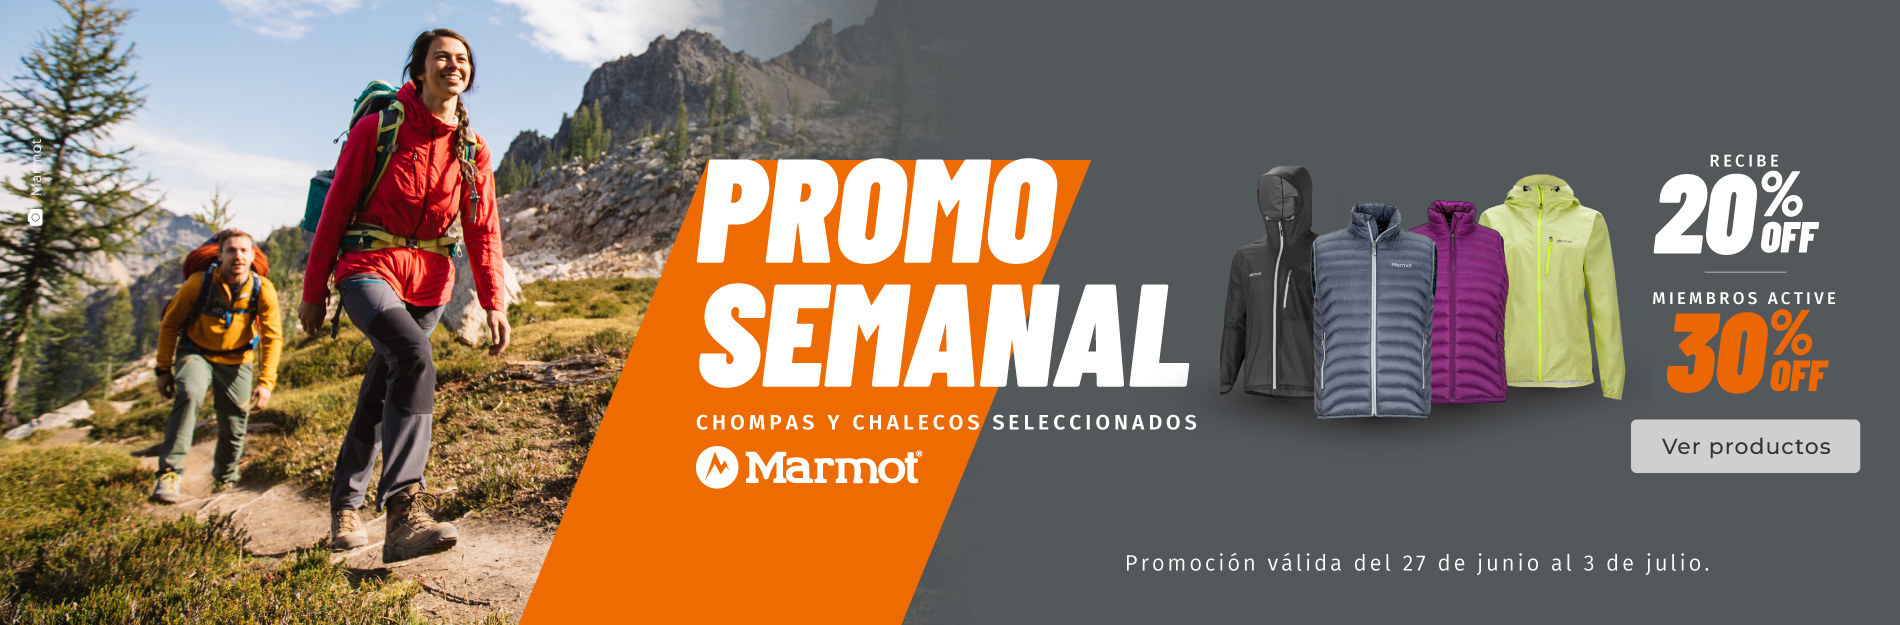 Promoción semanal Ecuador: chompas y chalecos seleccionados - Marmot.